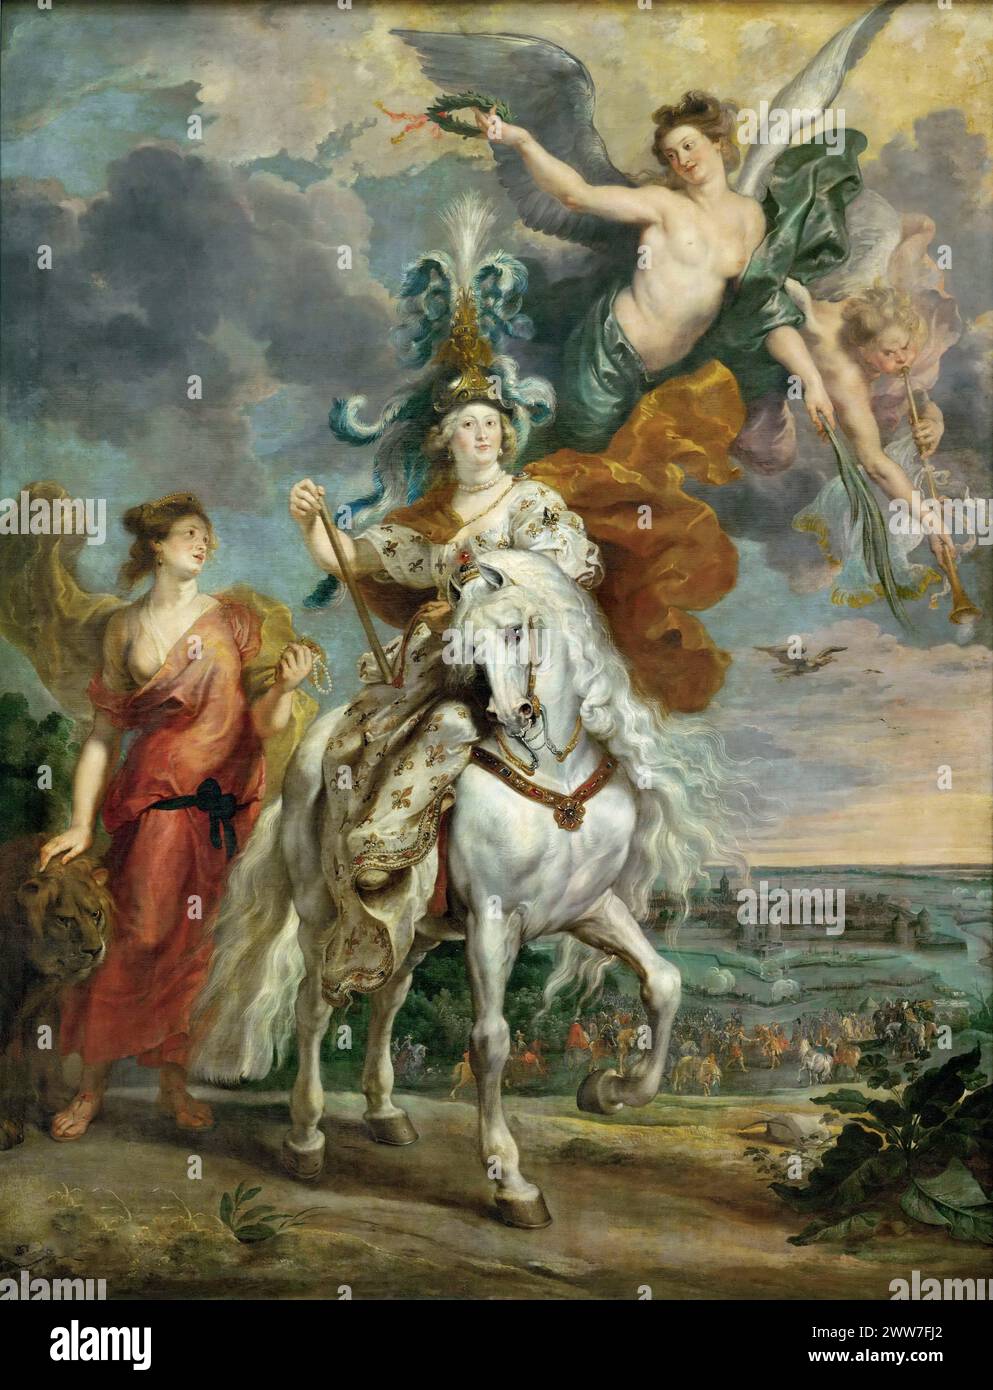 Reiterporträt von Mary de' Medici (1575-1642) und der Triumph bei Juliers, ca. 1622-1625 Gemälde von Pierre Paul Rubens Stockfoto